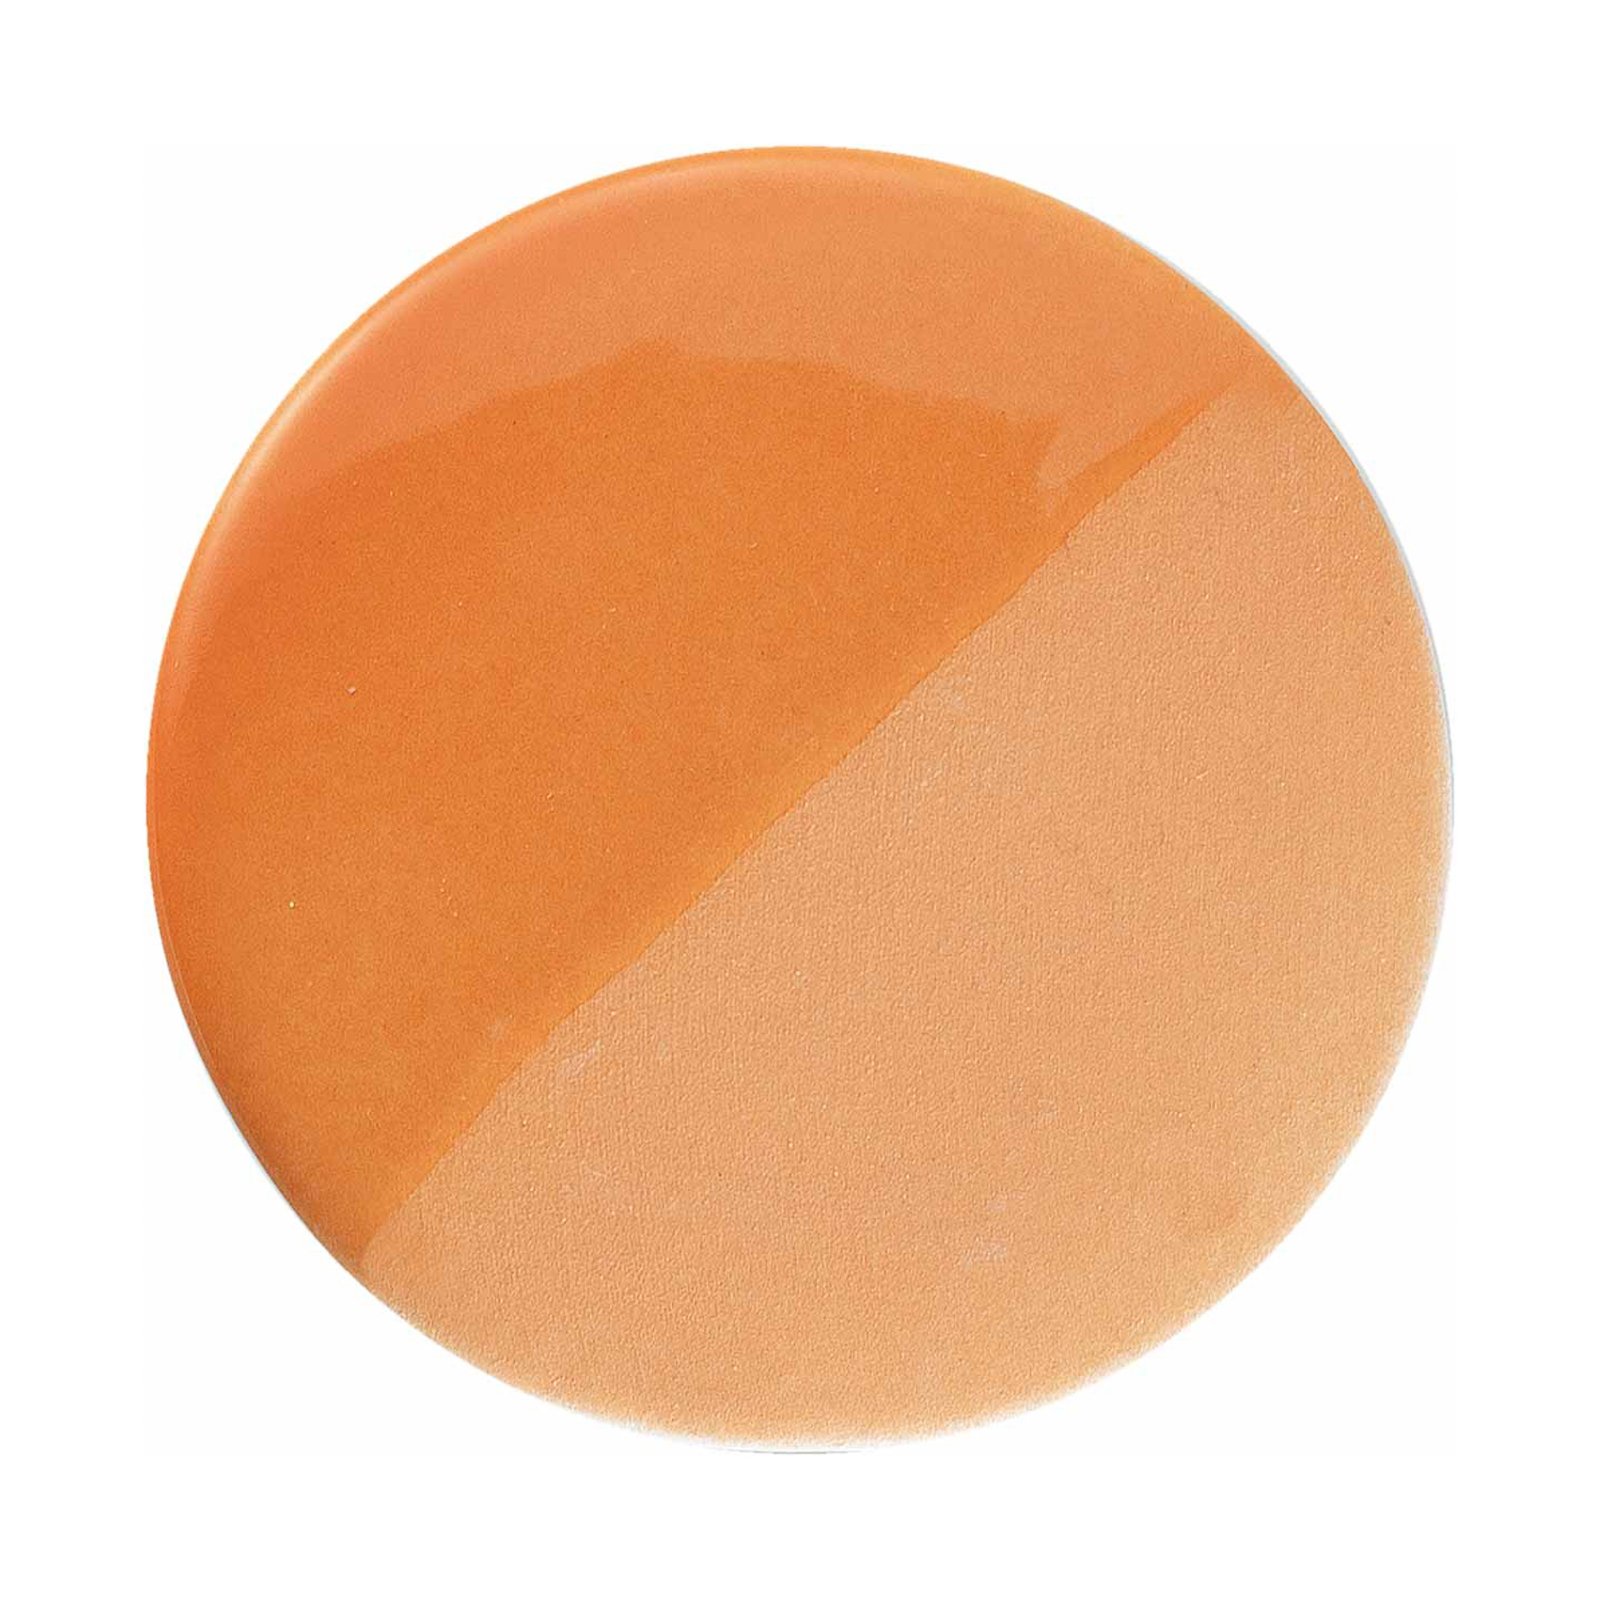 PI stropní svítidlo, válcové, Ø 8,5 cm, oranžové